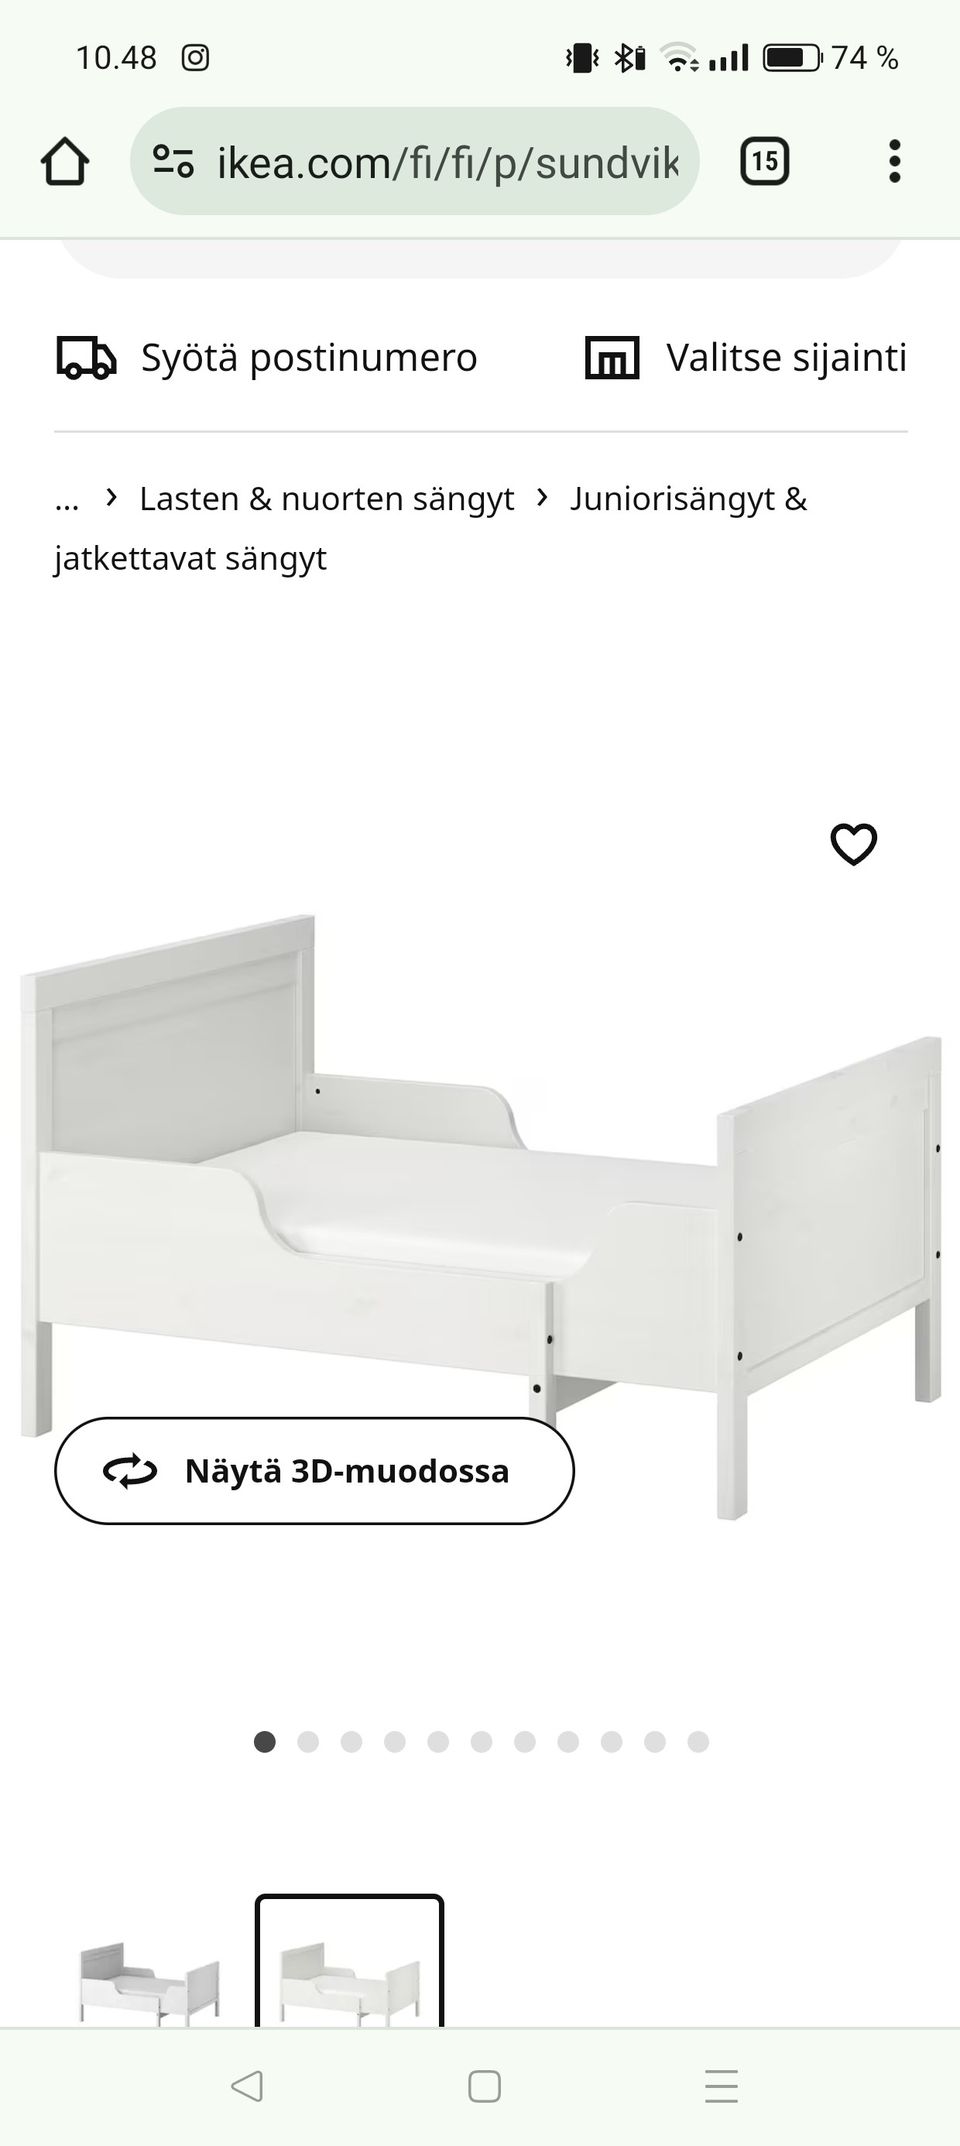 Ikea Sundvik jatkettava sänky